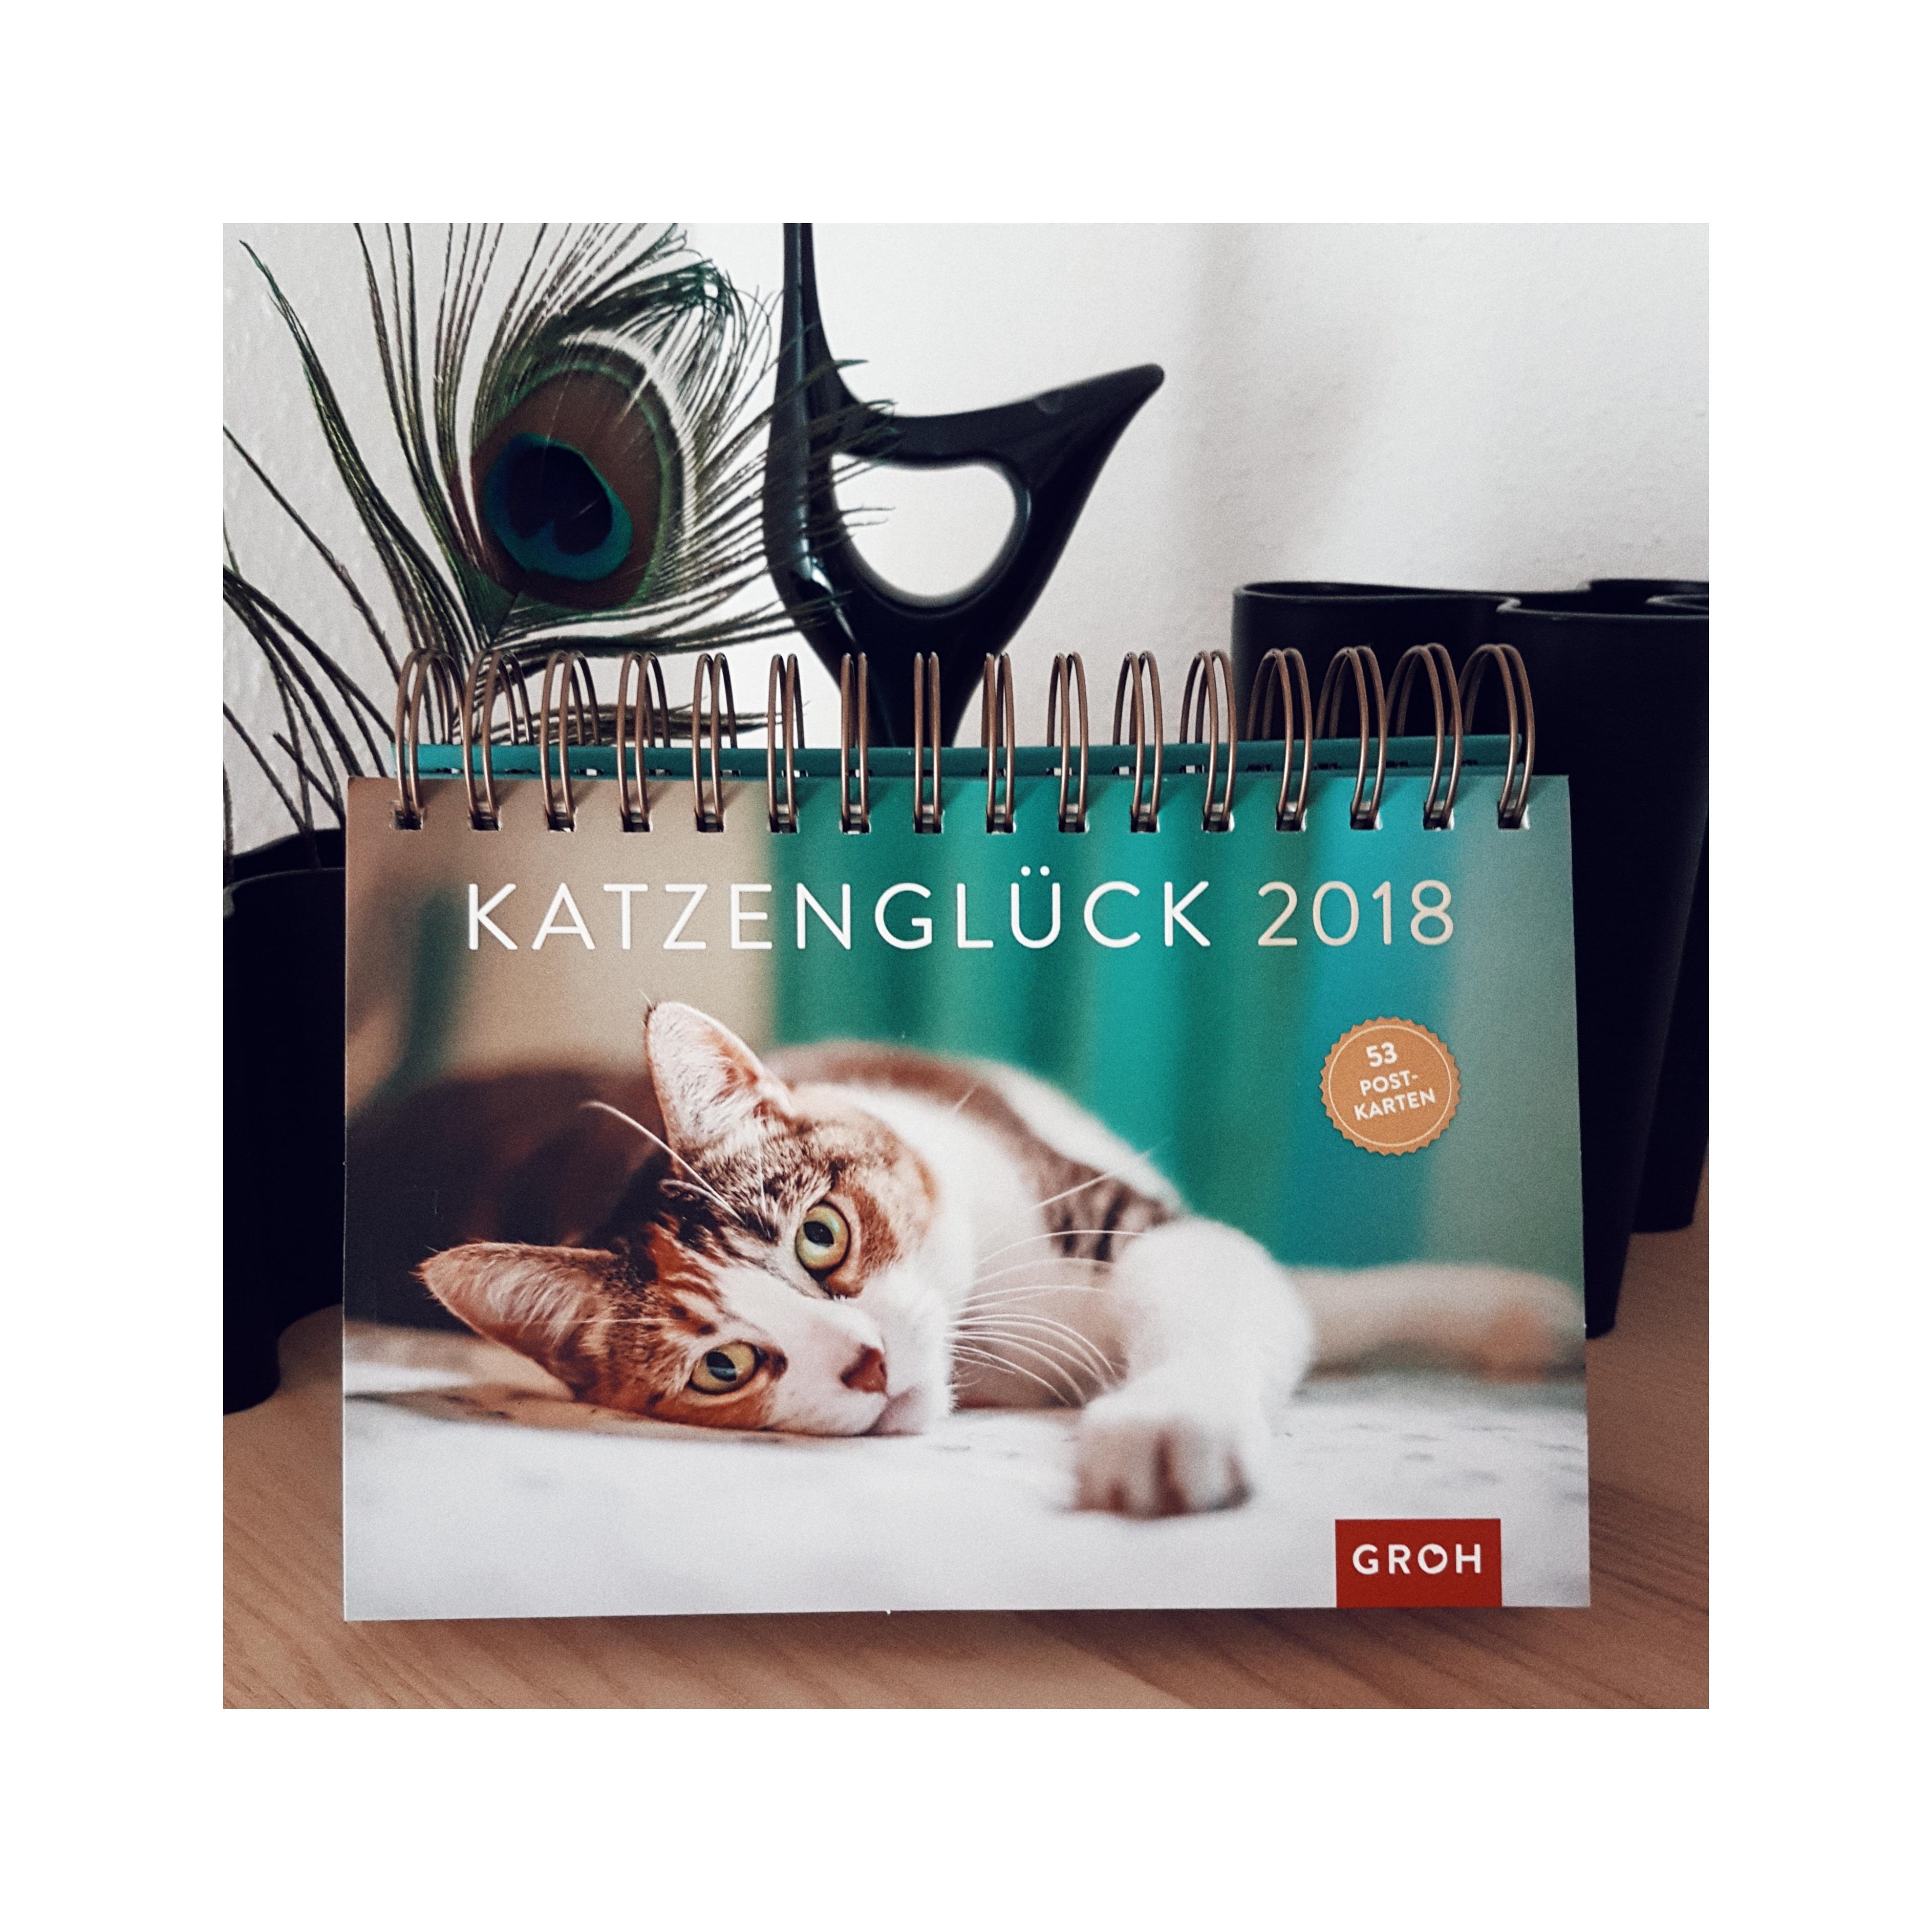 Frohes neues! Bin wieder da!
#2018 #kalendar #tischkalendar #katzenliebe #grohverlag